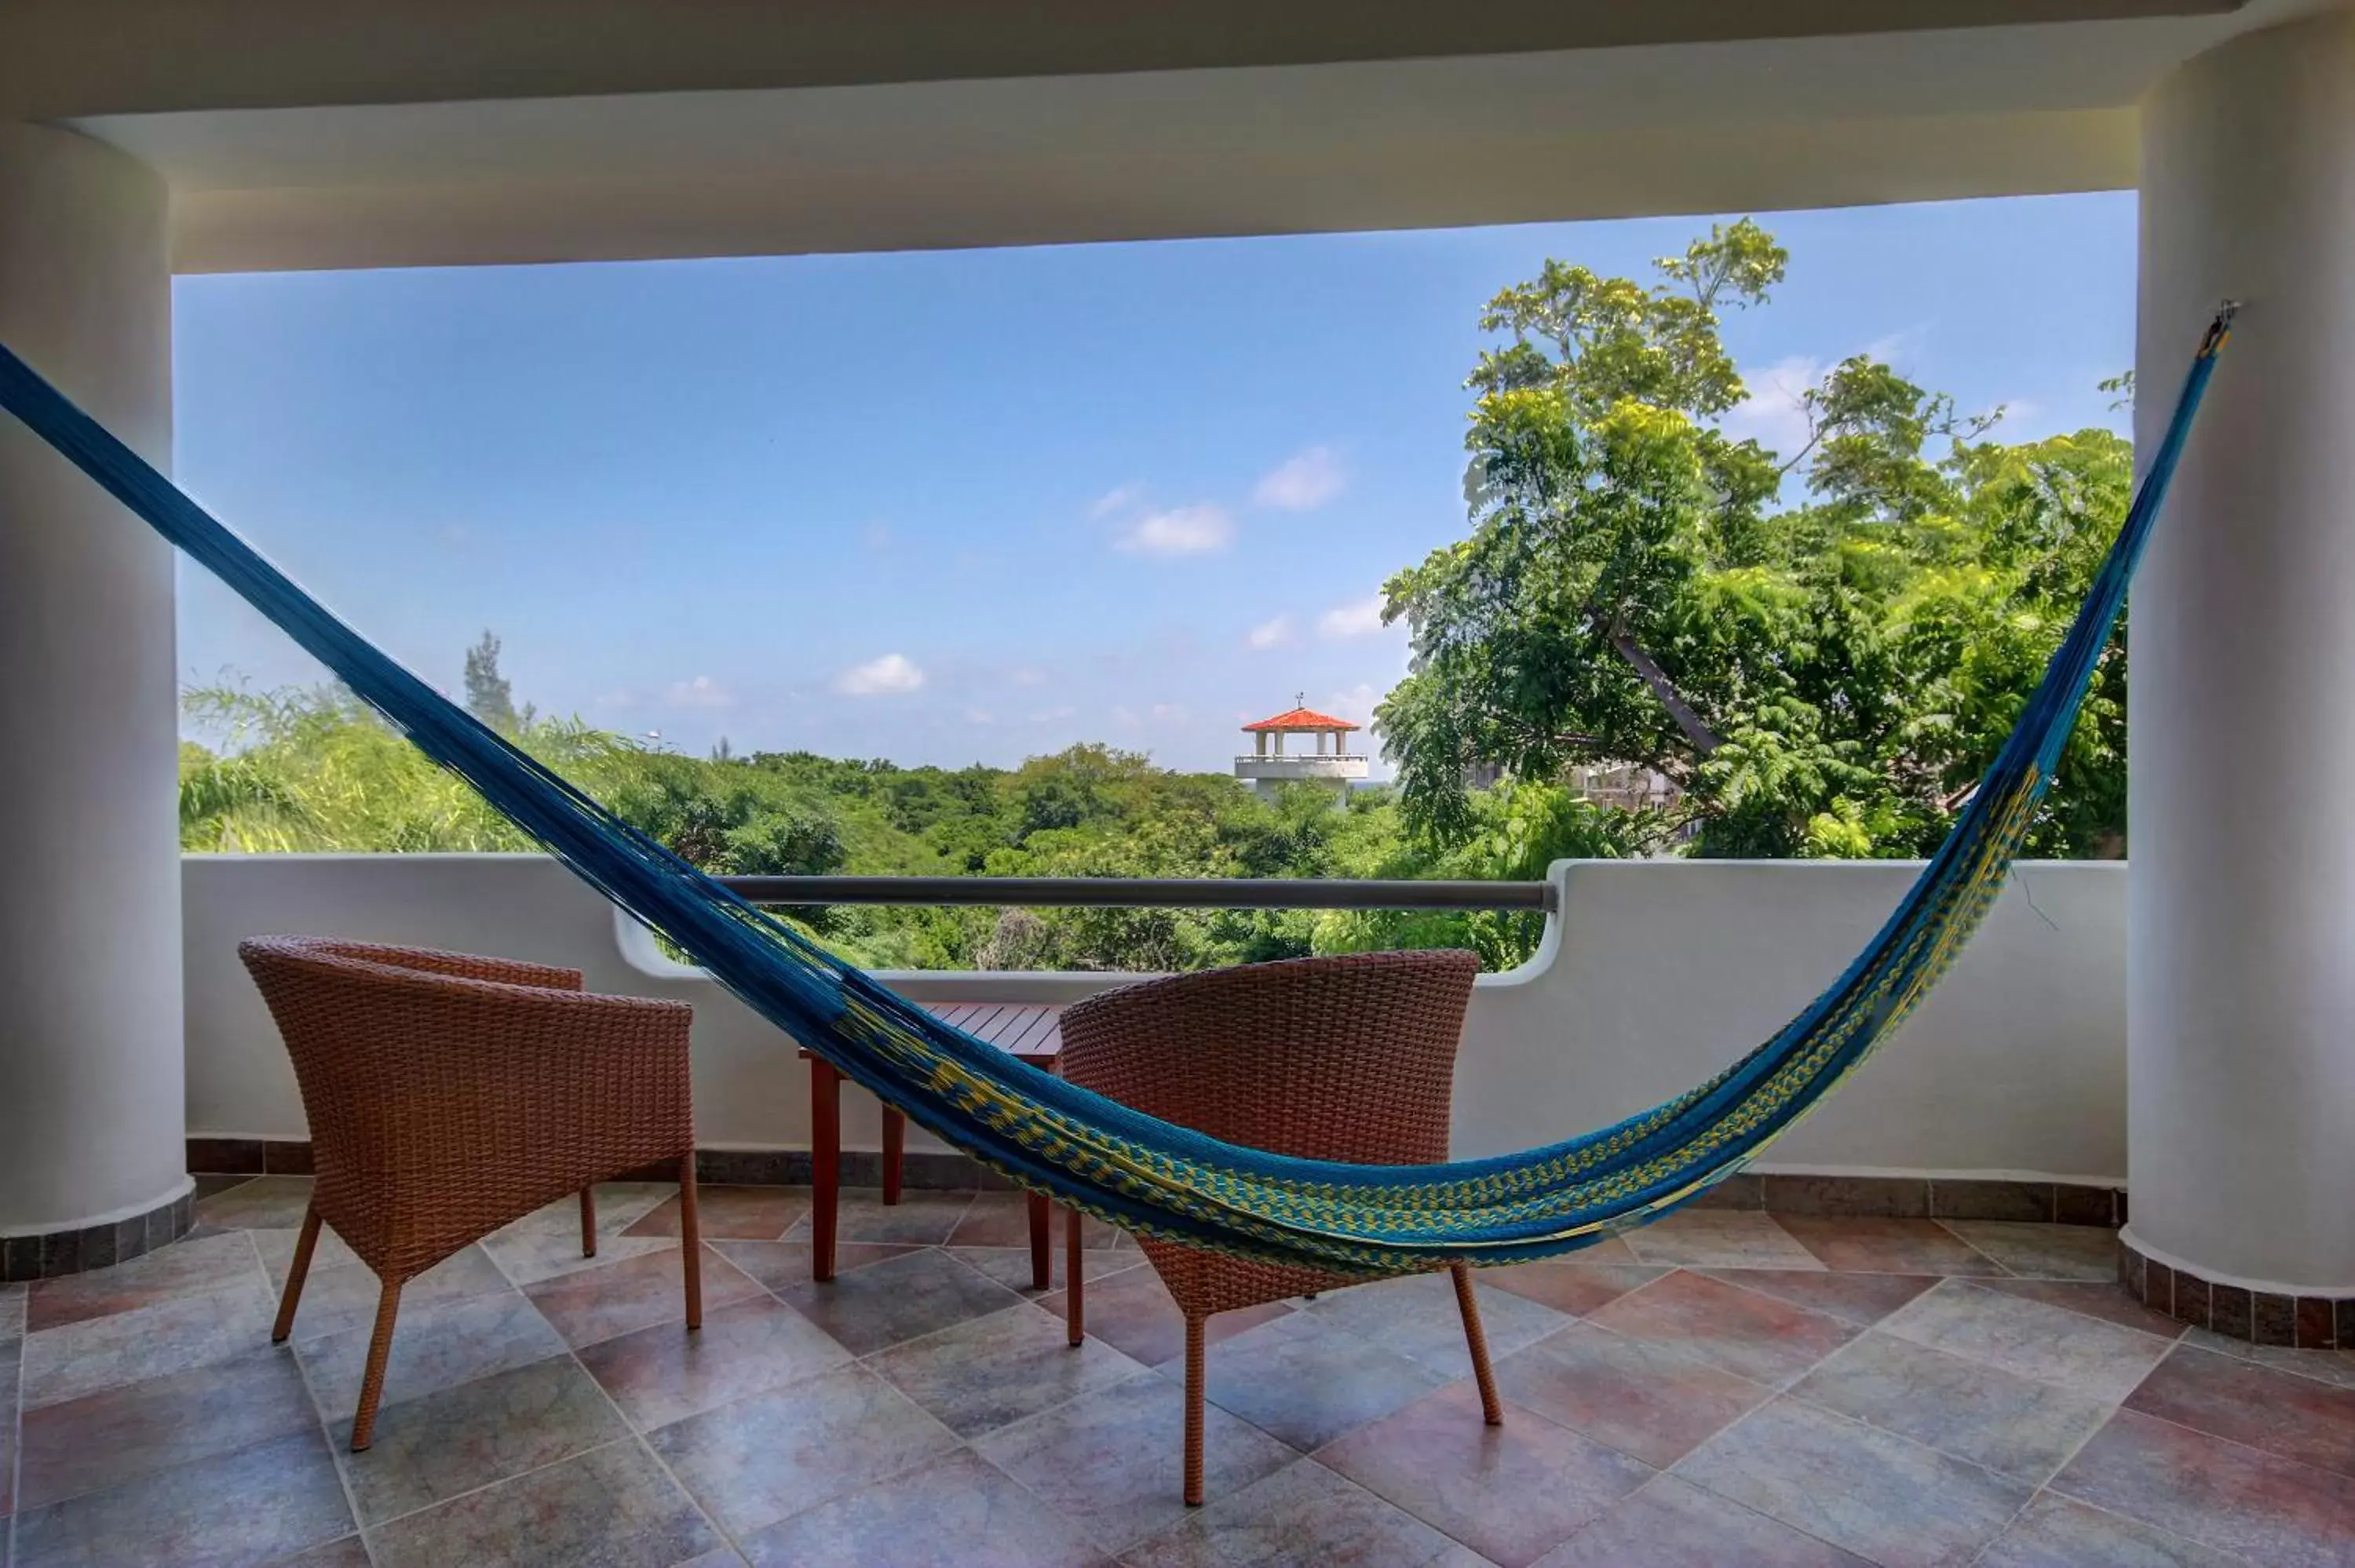 Balcony/Terrace, Patio/Outdoor Area in Riviera Maya Suites